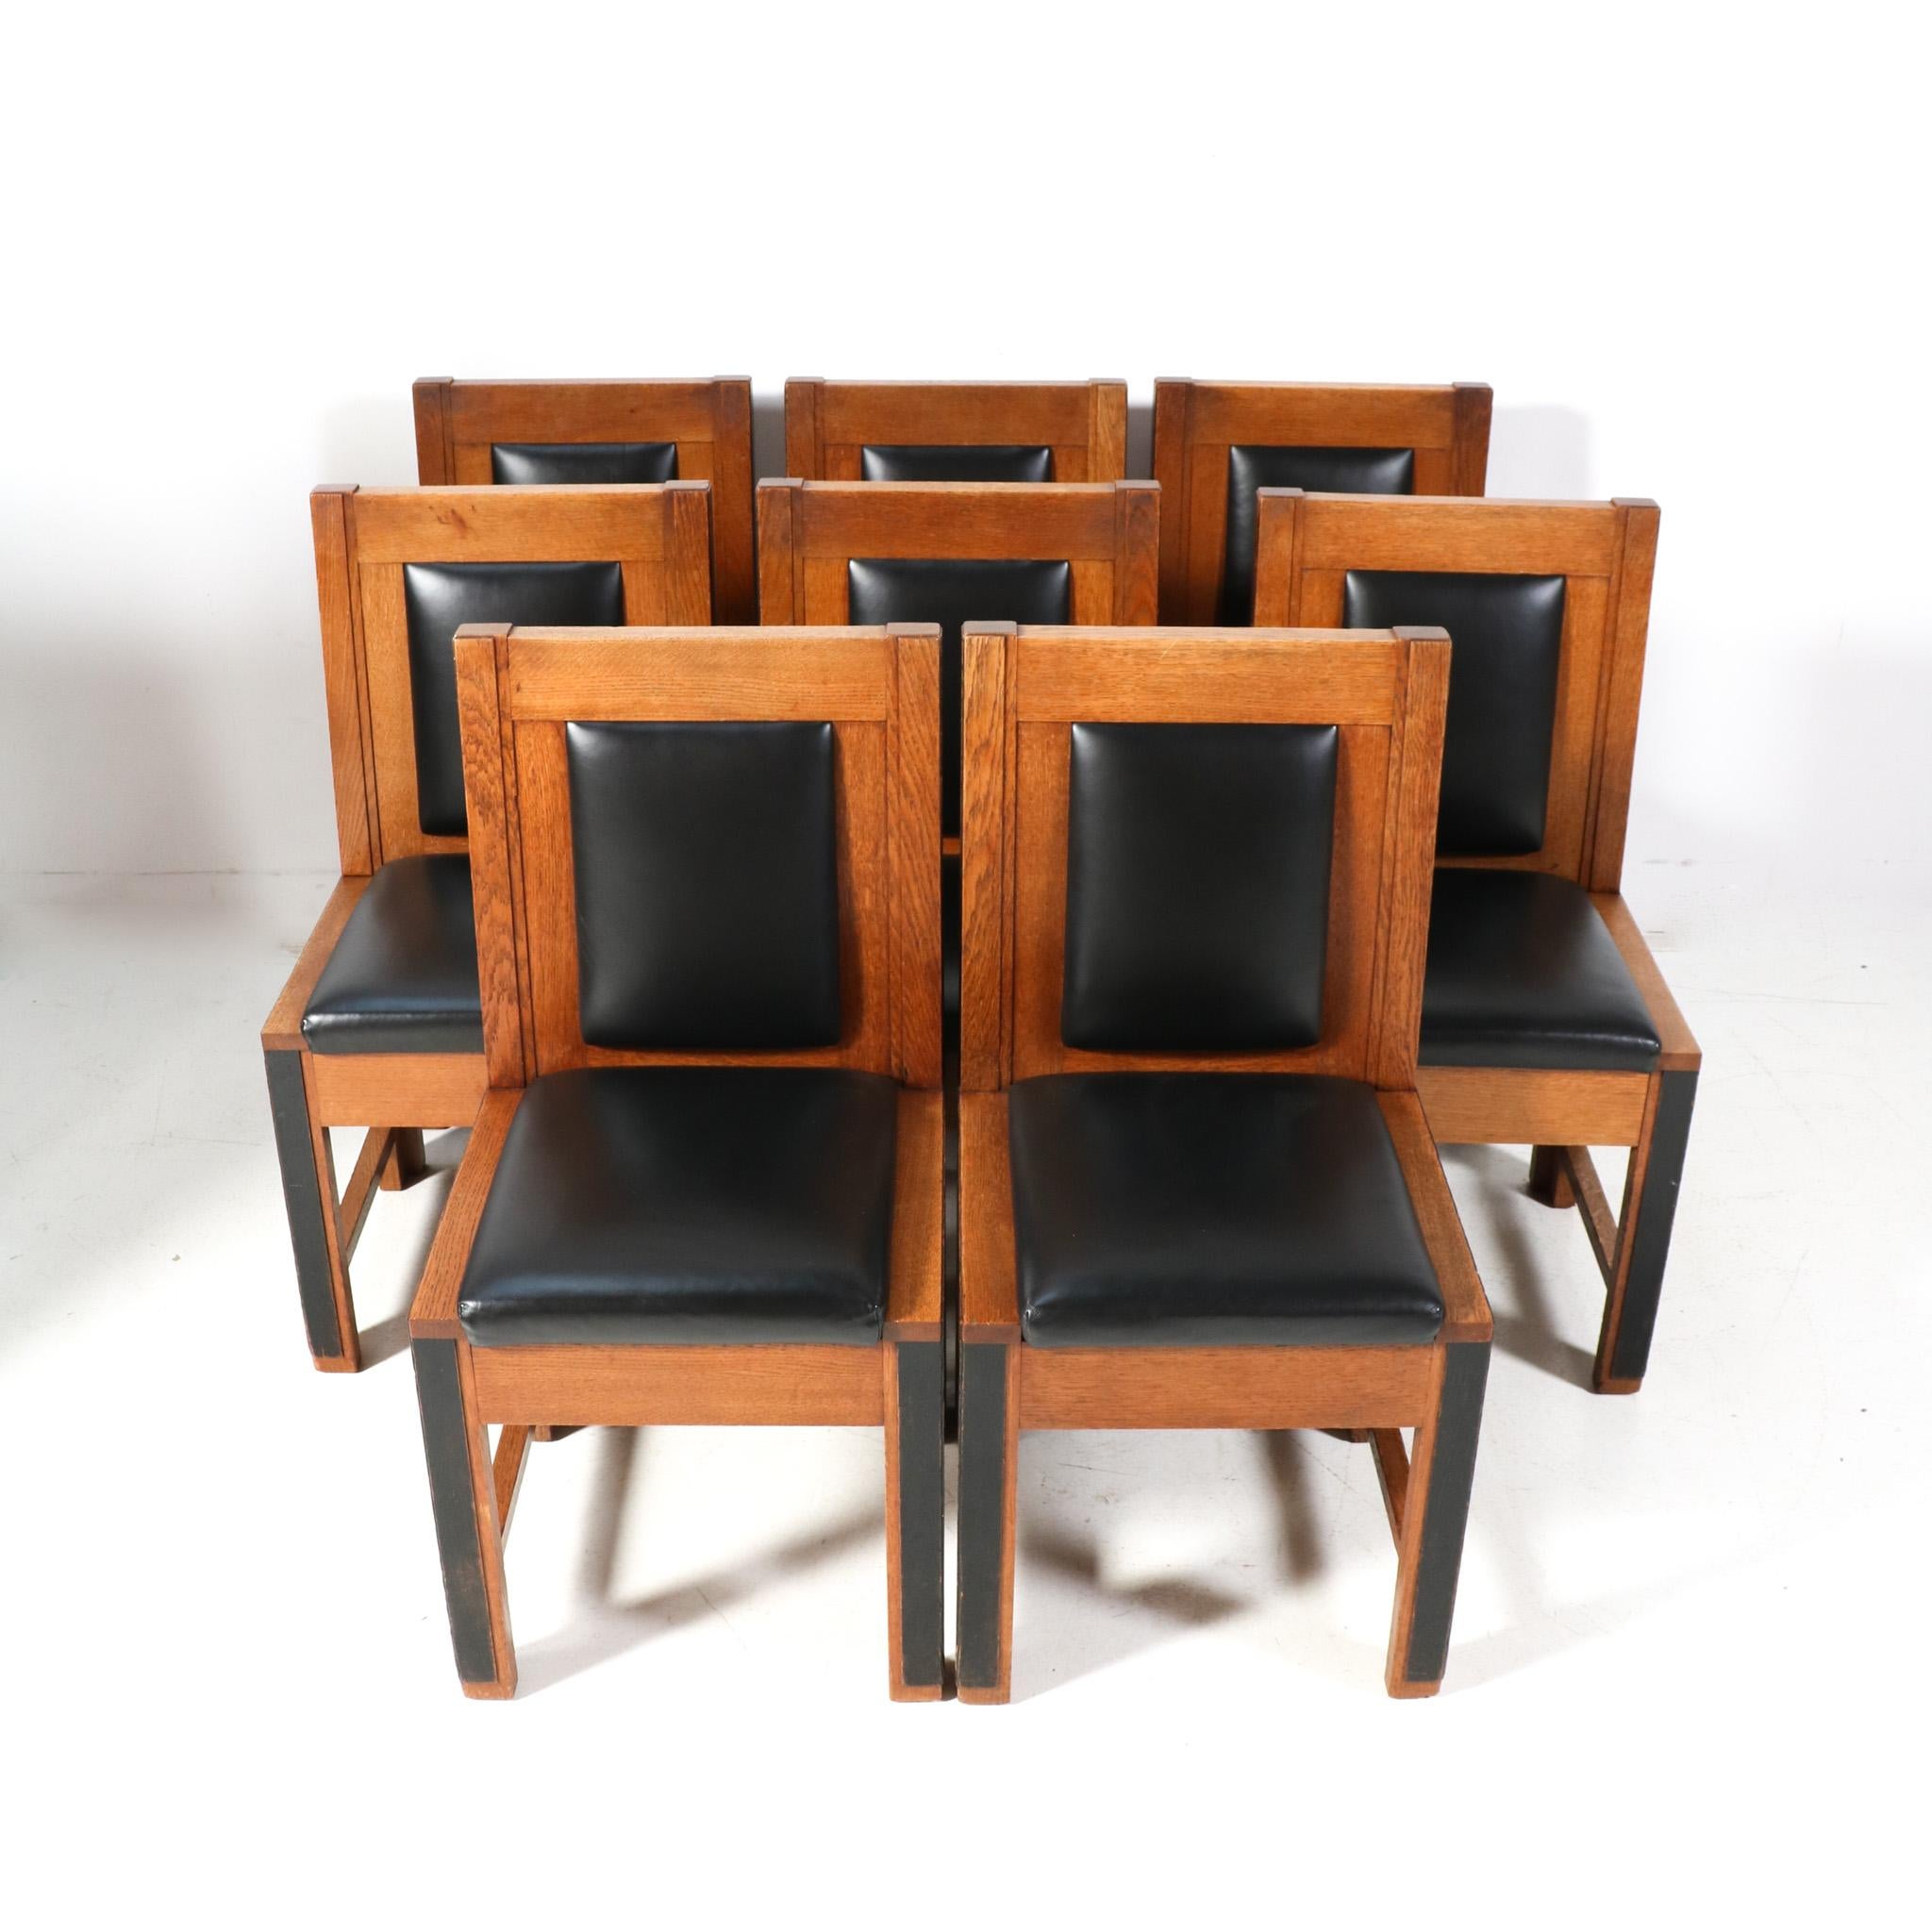 Magnifique et rare ensemble de huit chaises modernistes Art Déco.
Cette série de huit a été conçue et fabriquée par Fa. Randoe Haarlem pour l'hôtel de ville de Haarlem.
Un design néerlandais saisissant des années 1920.
Cadres en chêne massif avec